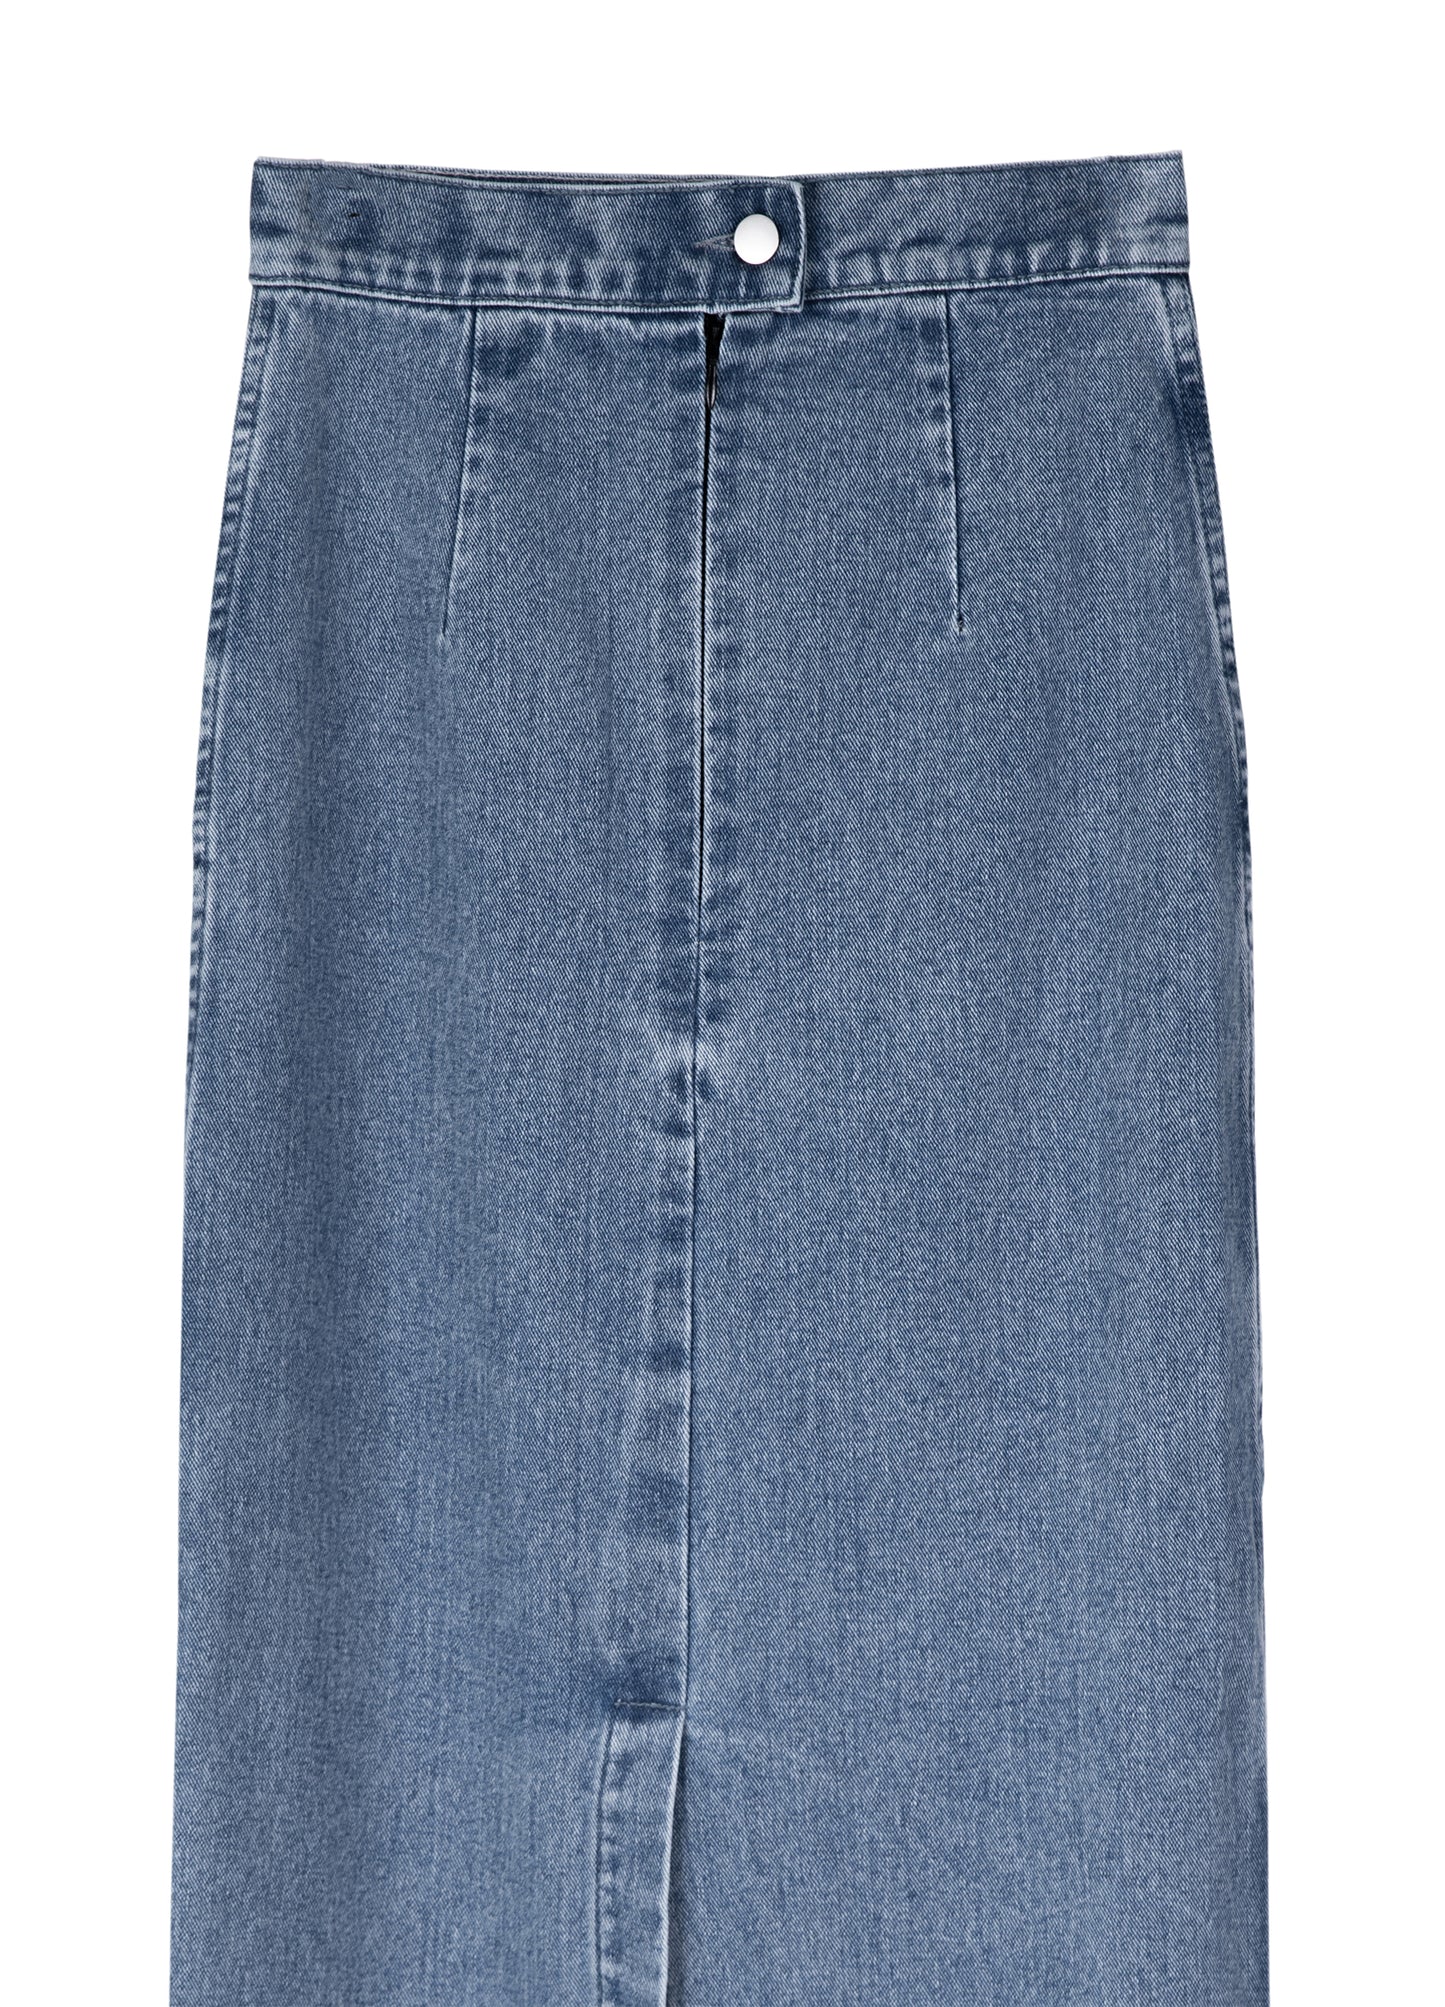 Full length Denim Skirt